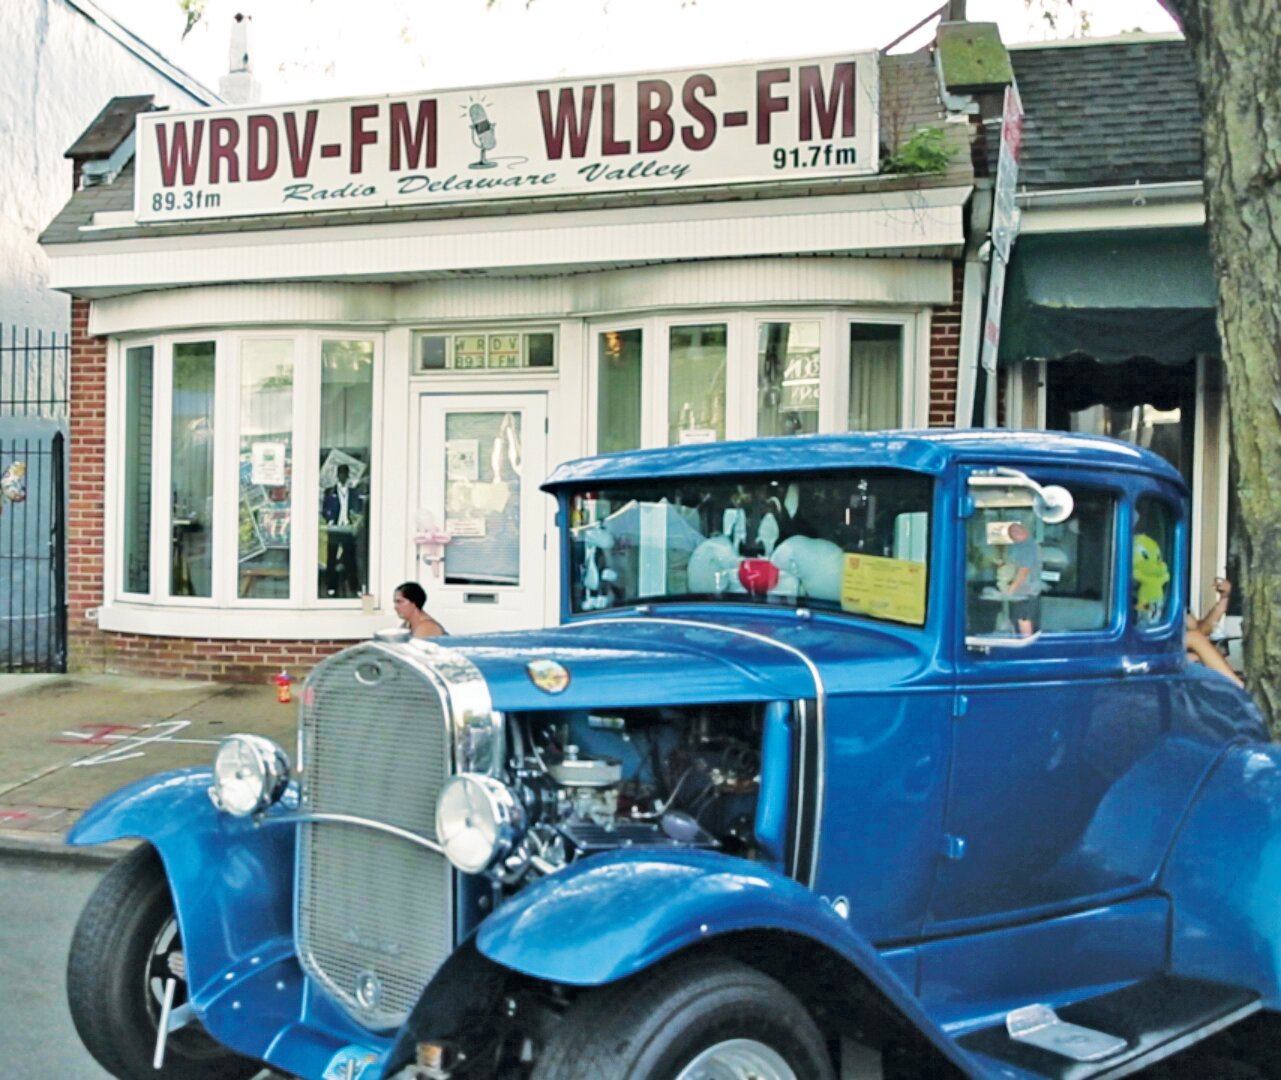 The WRDV studio in Hatboro.